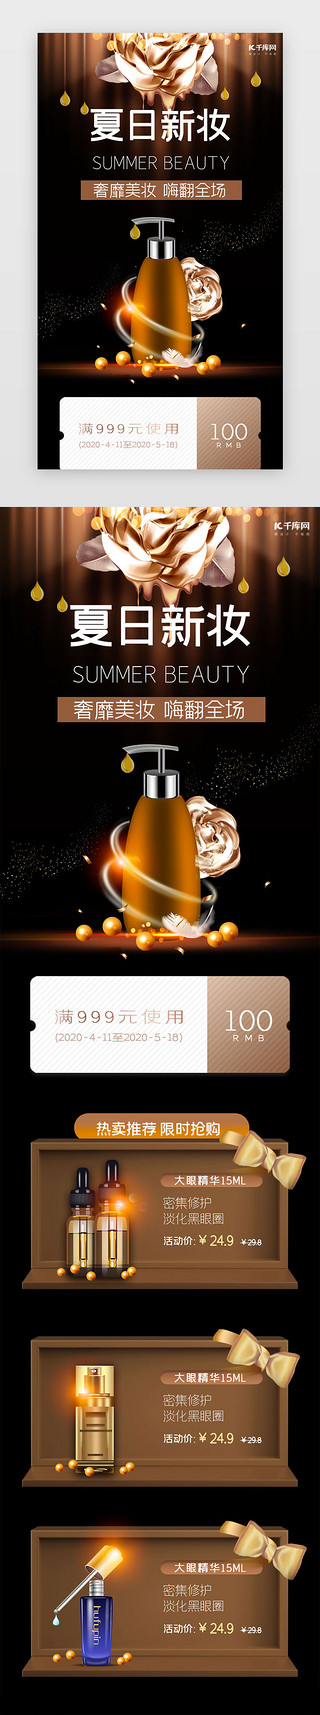 棕色画册UI设计素材_棕色简约夏日美妆促销h5长图电商